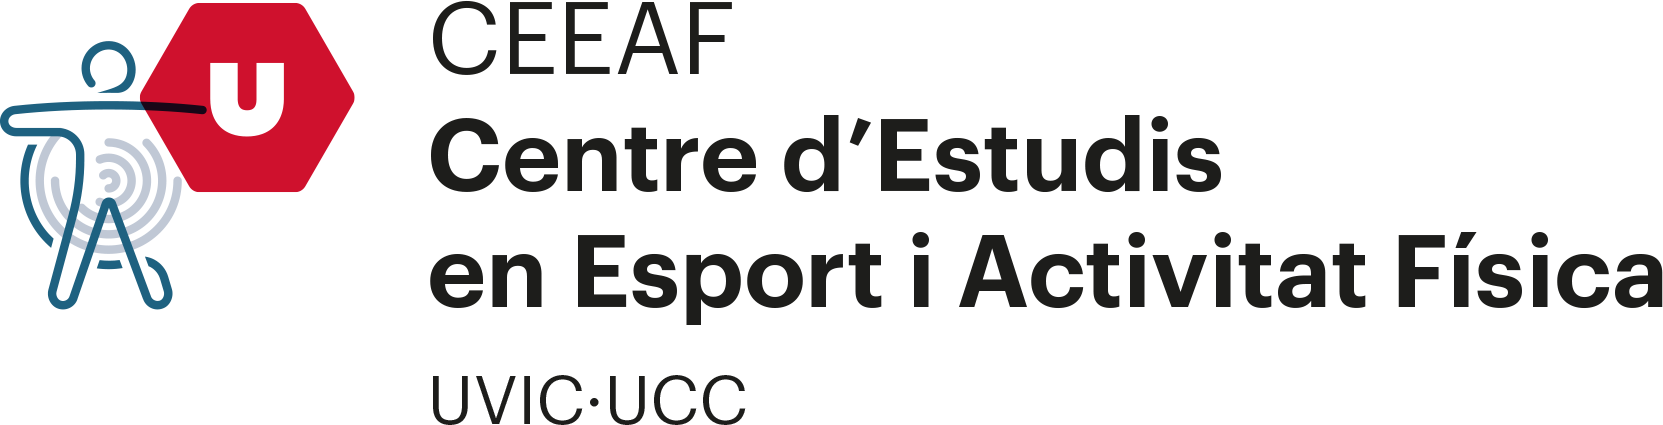 Centro de Estudios en Deporte i Actividad Física (CEEAF)